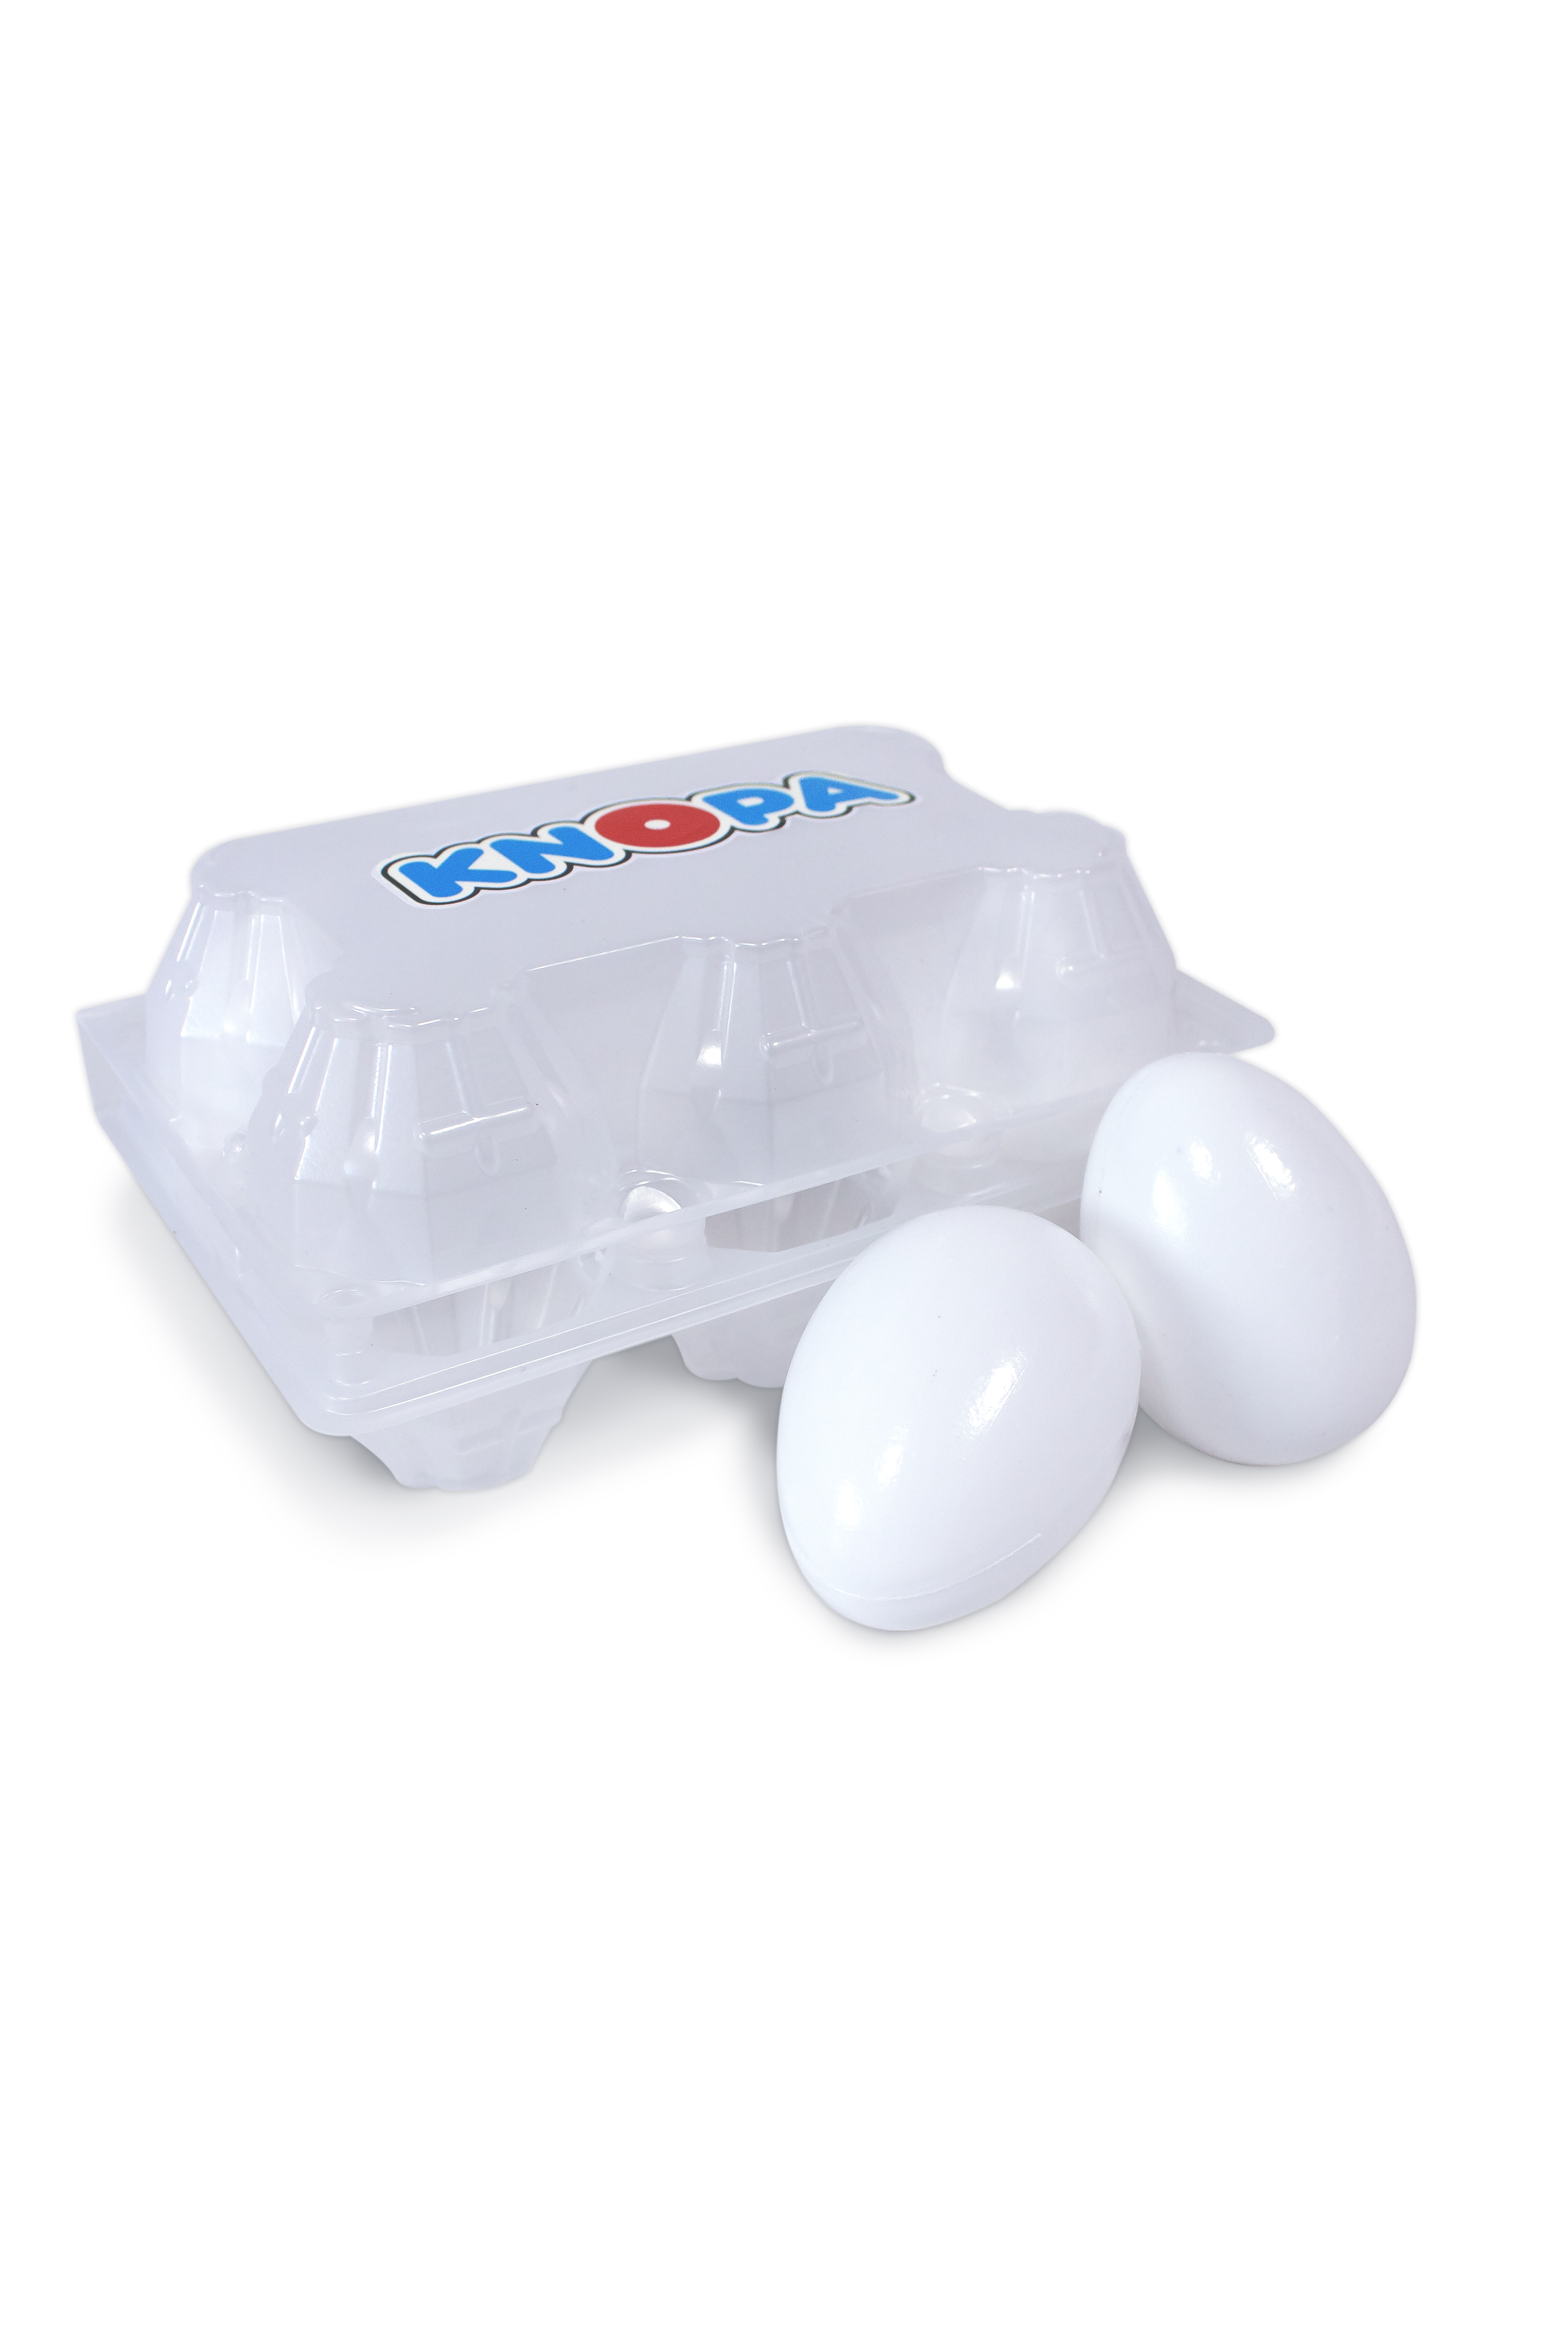 Игровой набор KNOPA Яйца 6 шт - фото 1